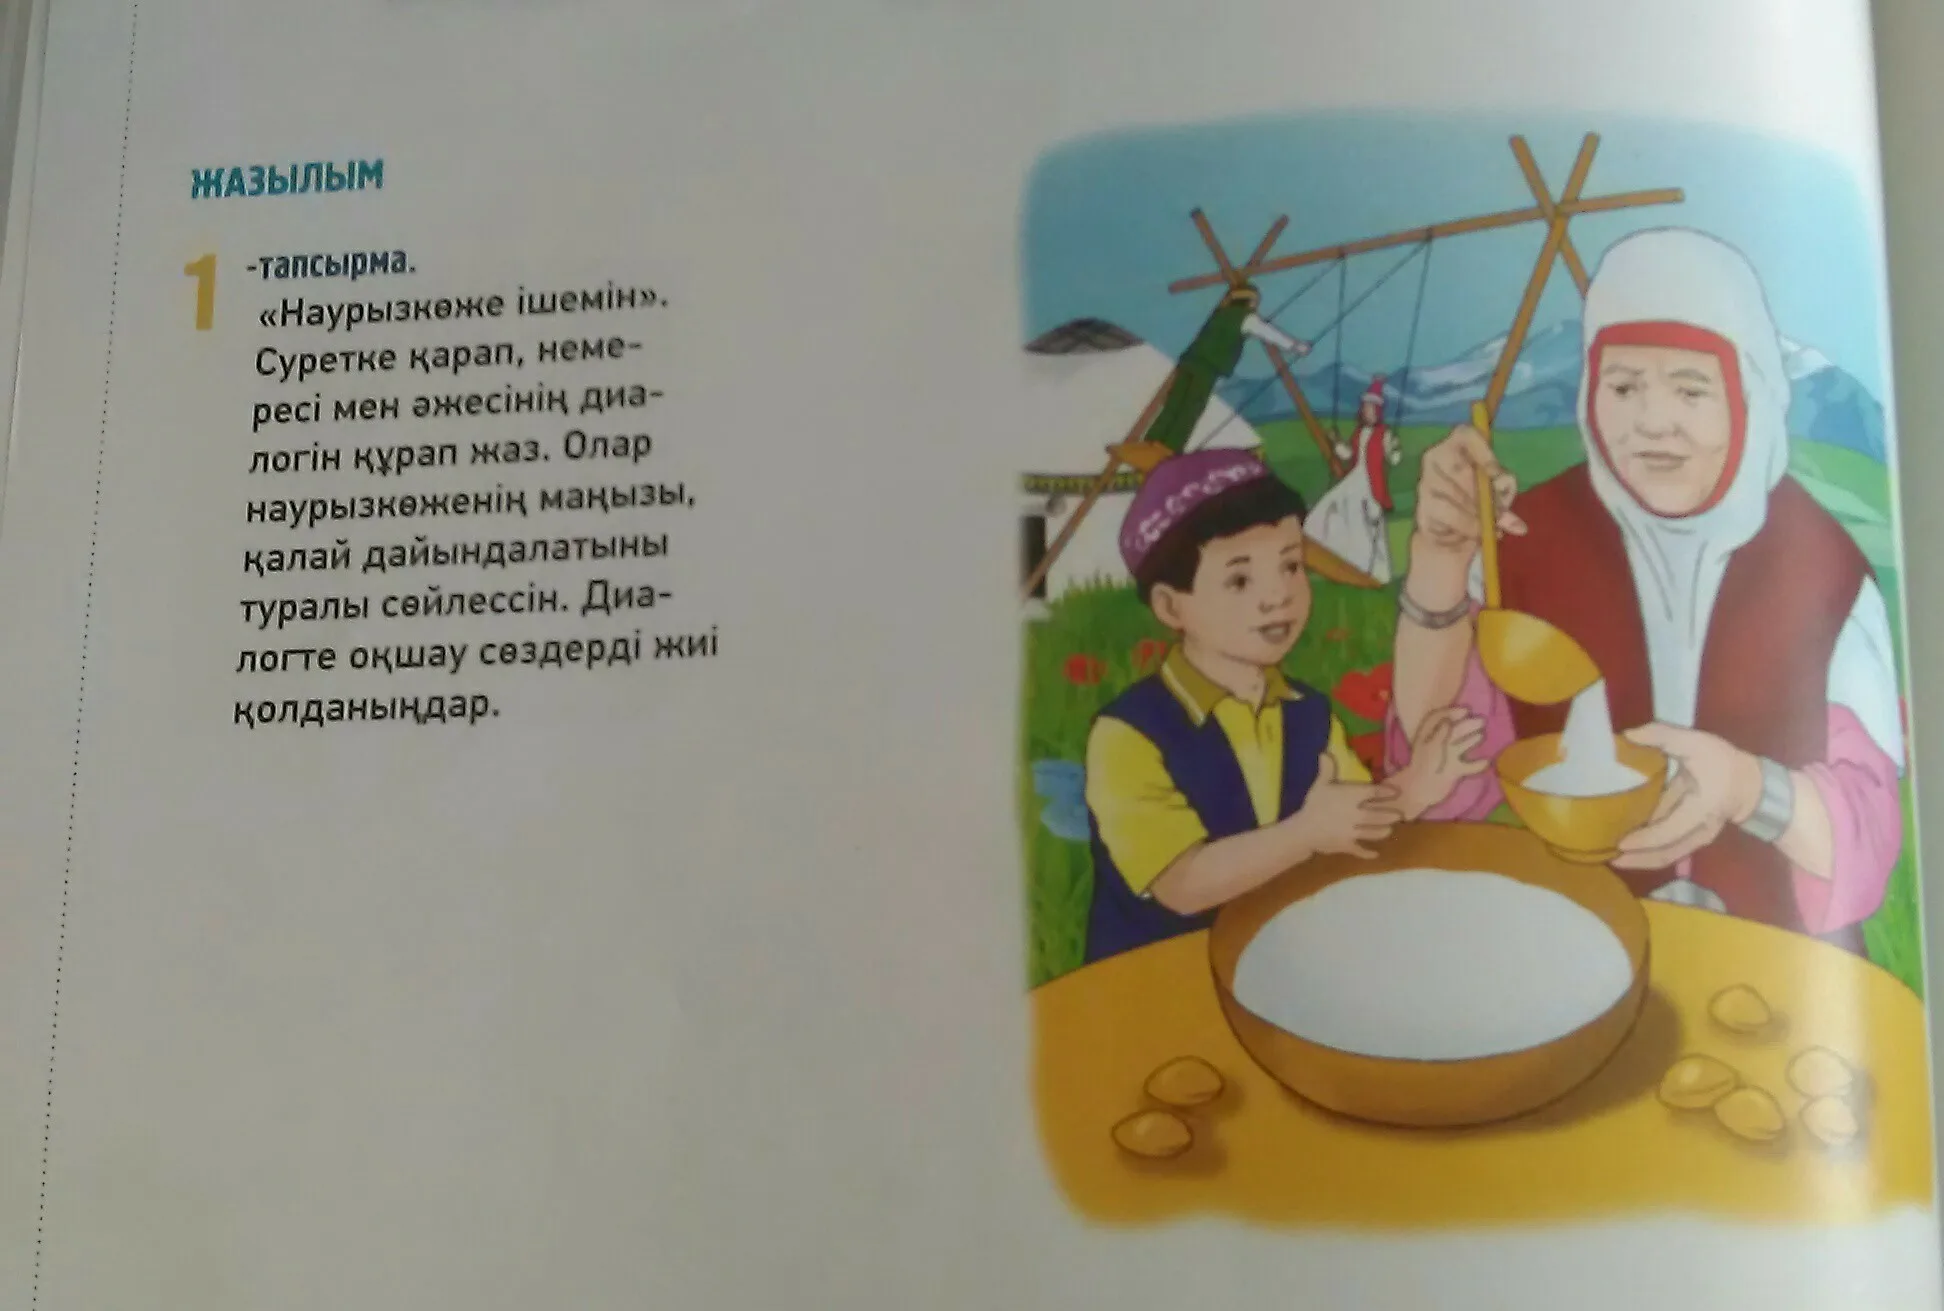 Стихи на наурыз для детей русском языке. Стихи на казахском. Стихи про Наурыз. Стихи на Наурыз на казахском языке. Детские стихи про Наурыз.